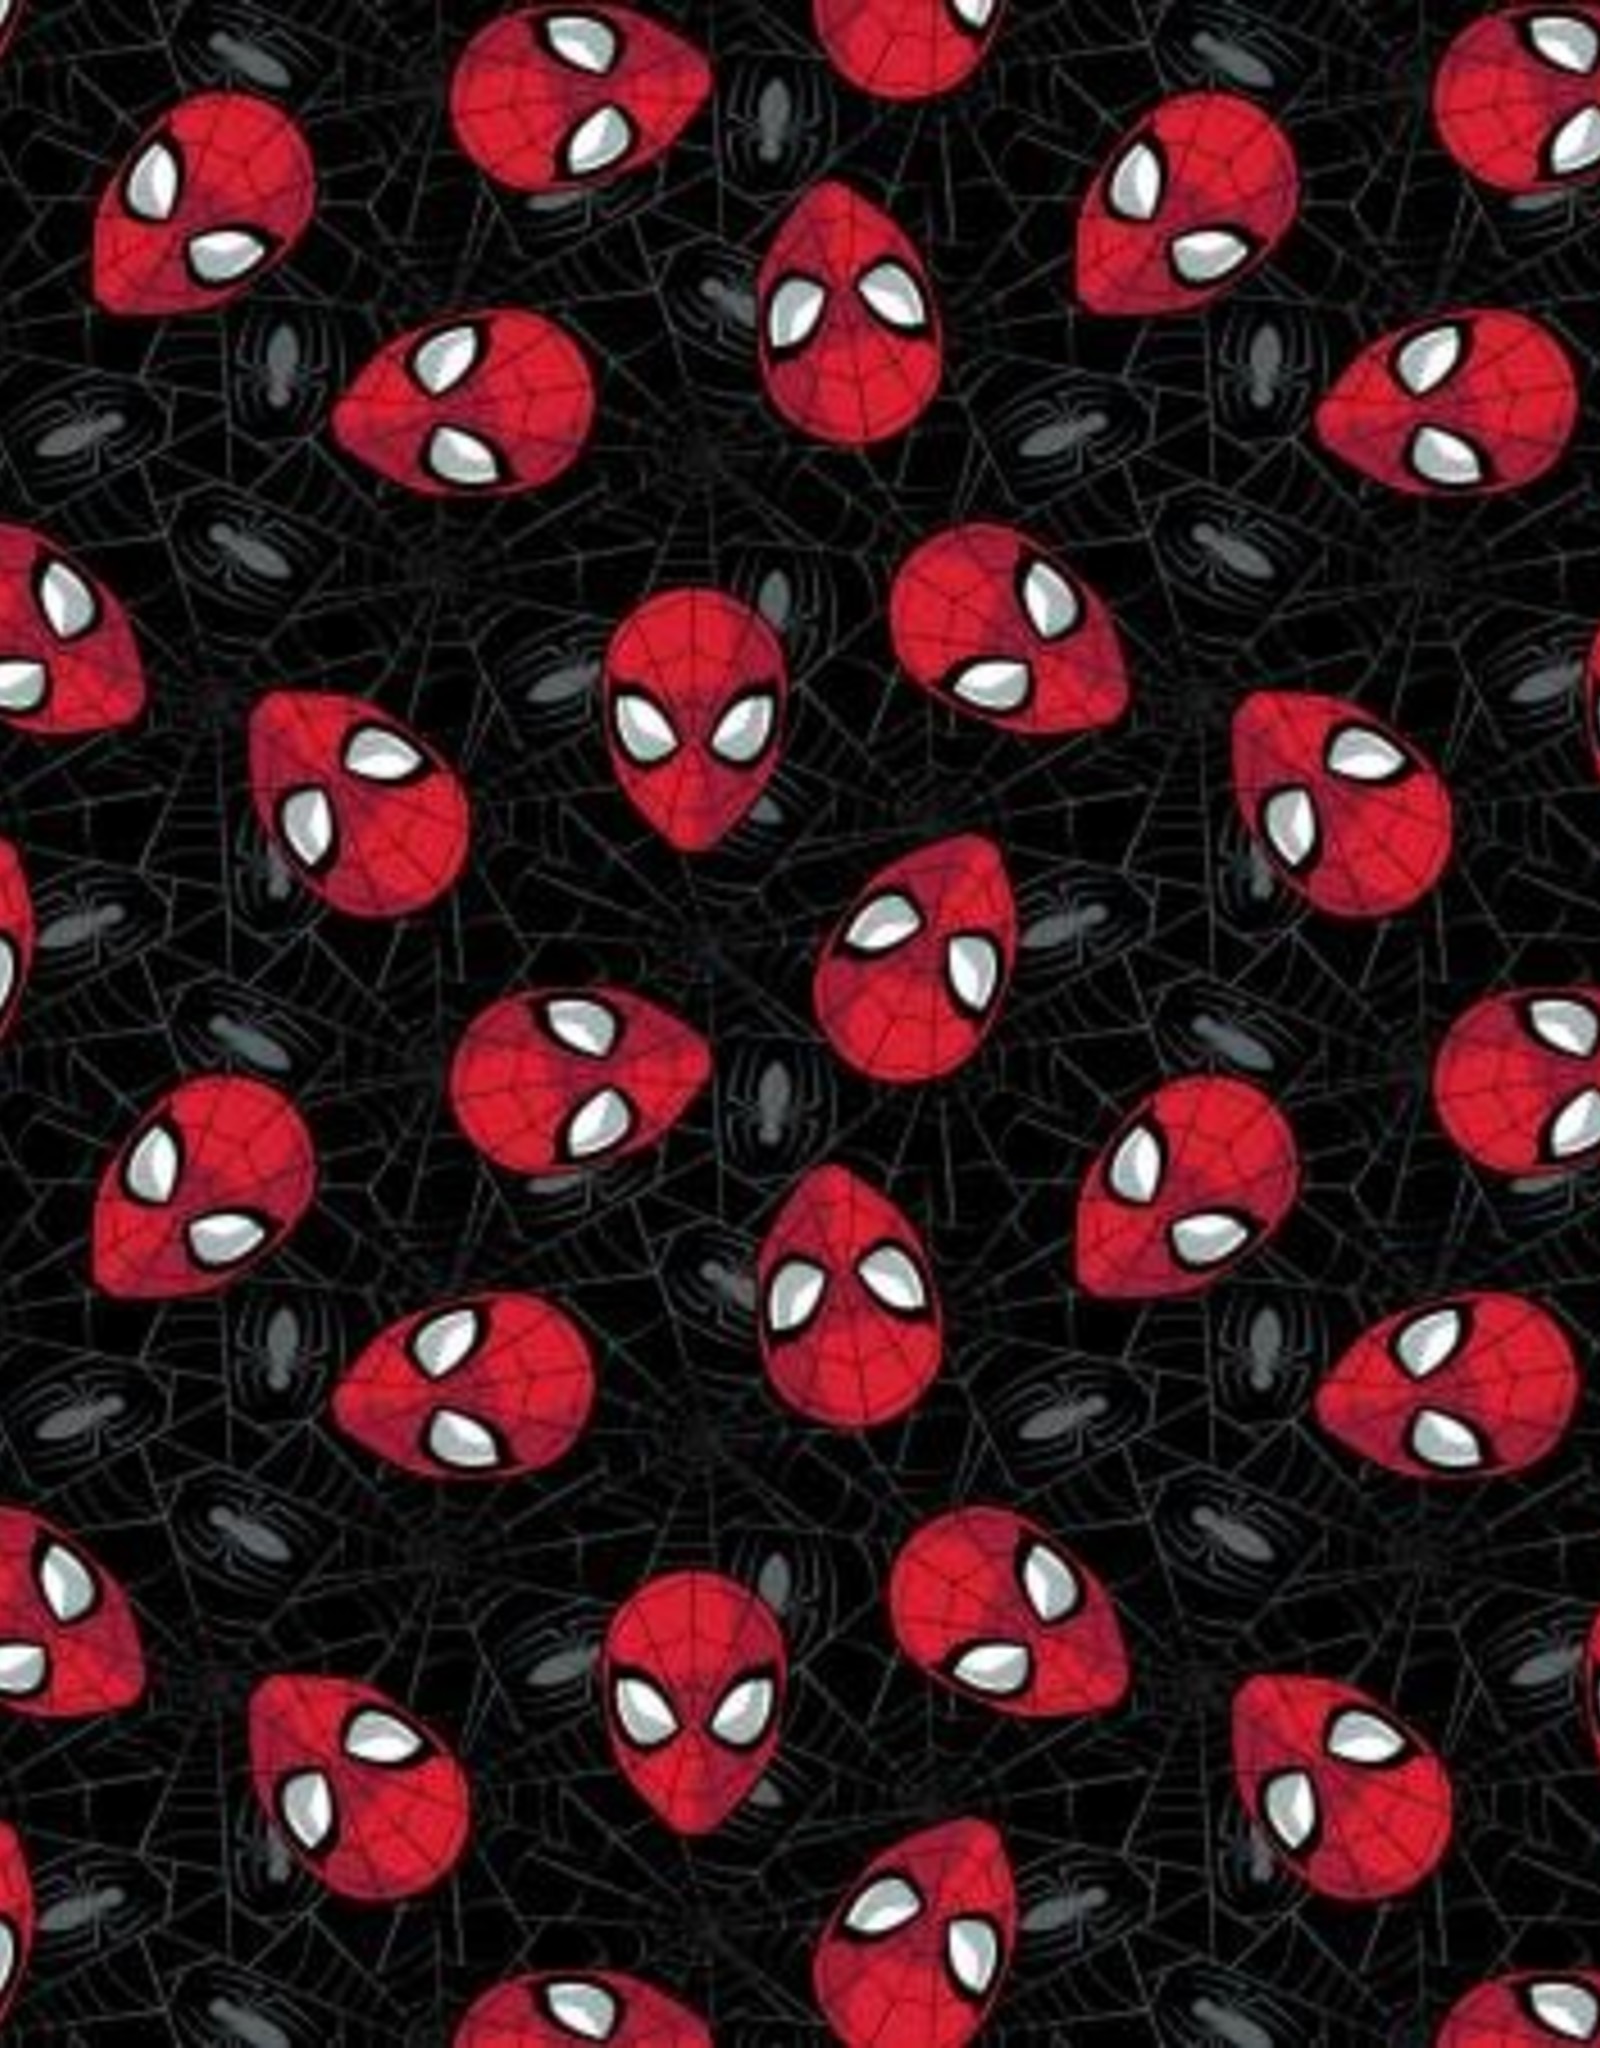 Spider-Man Web